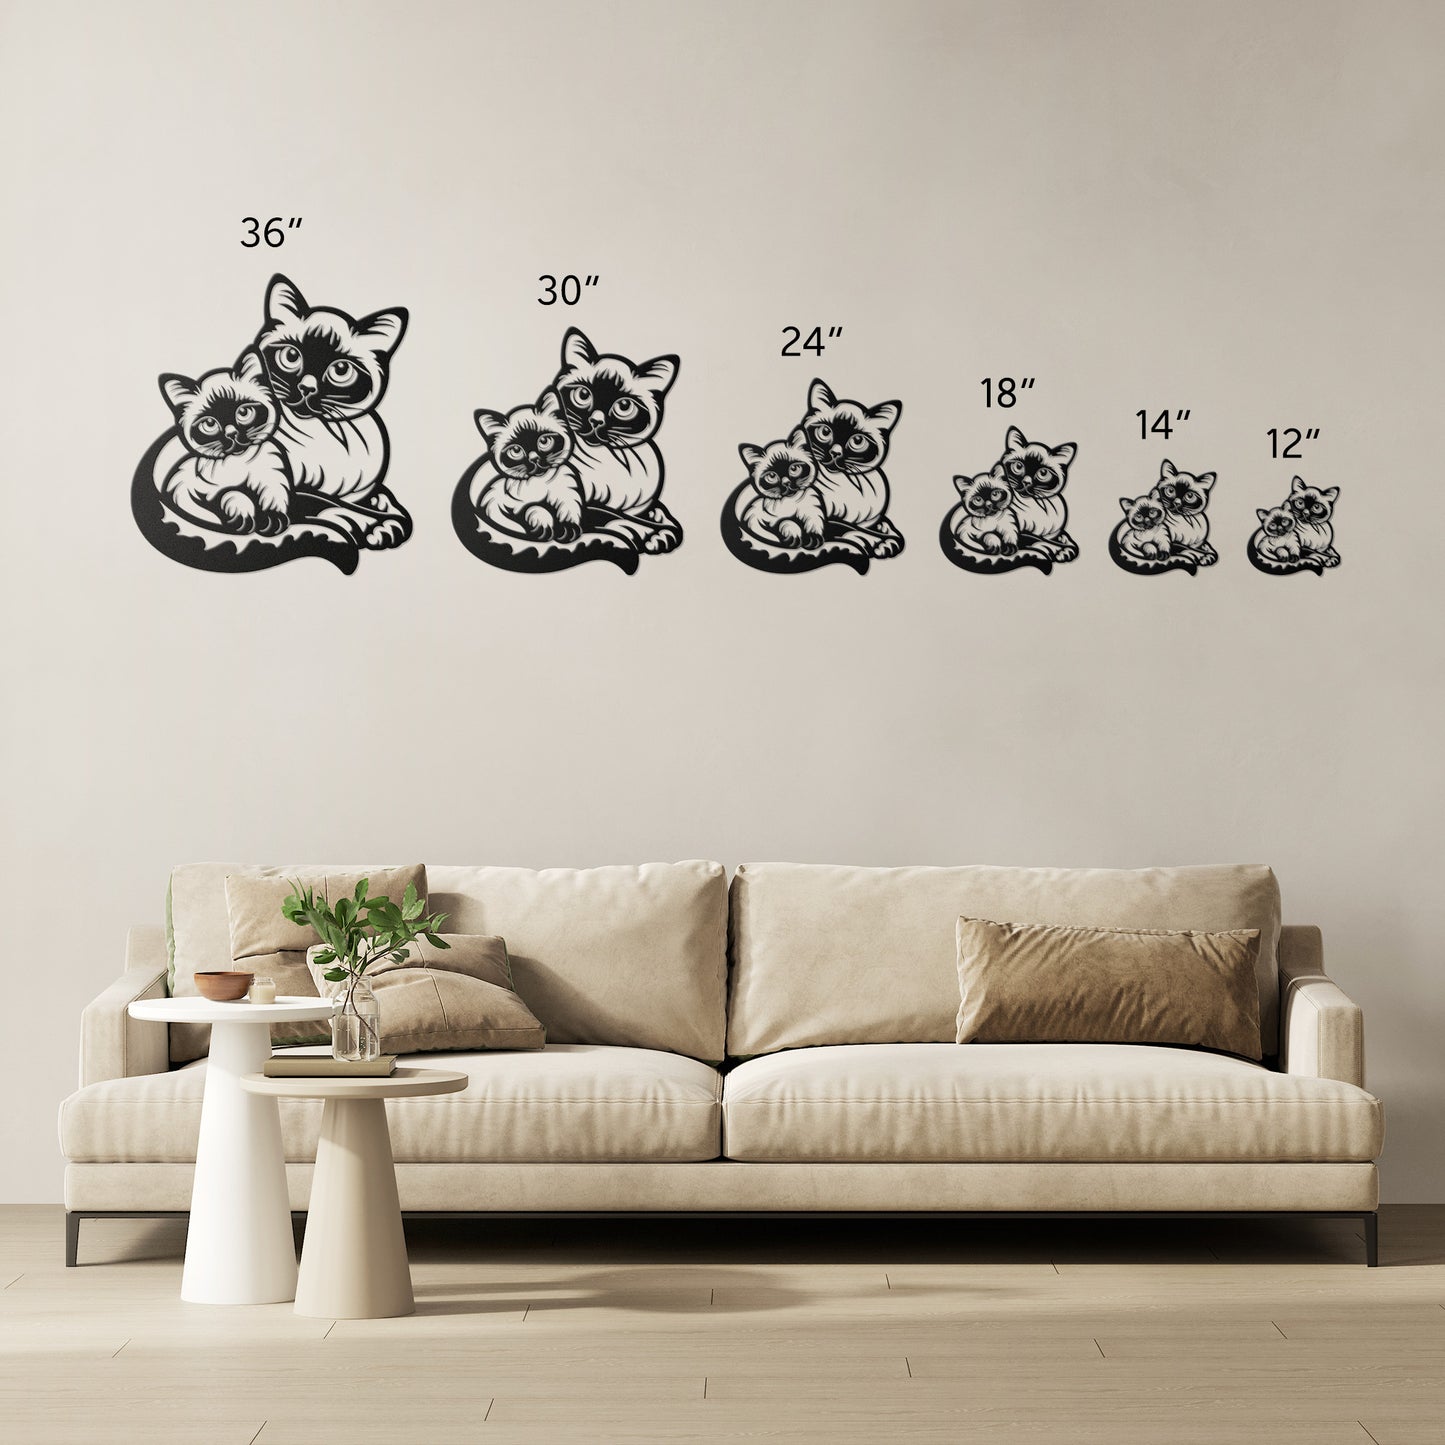 Cat Breeds - Die-Cut Metal Wall Art - Siamese #10